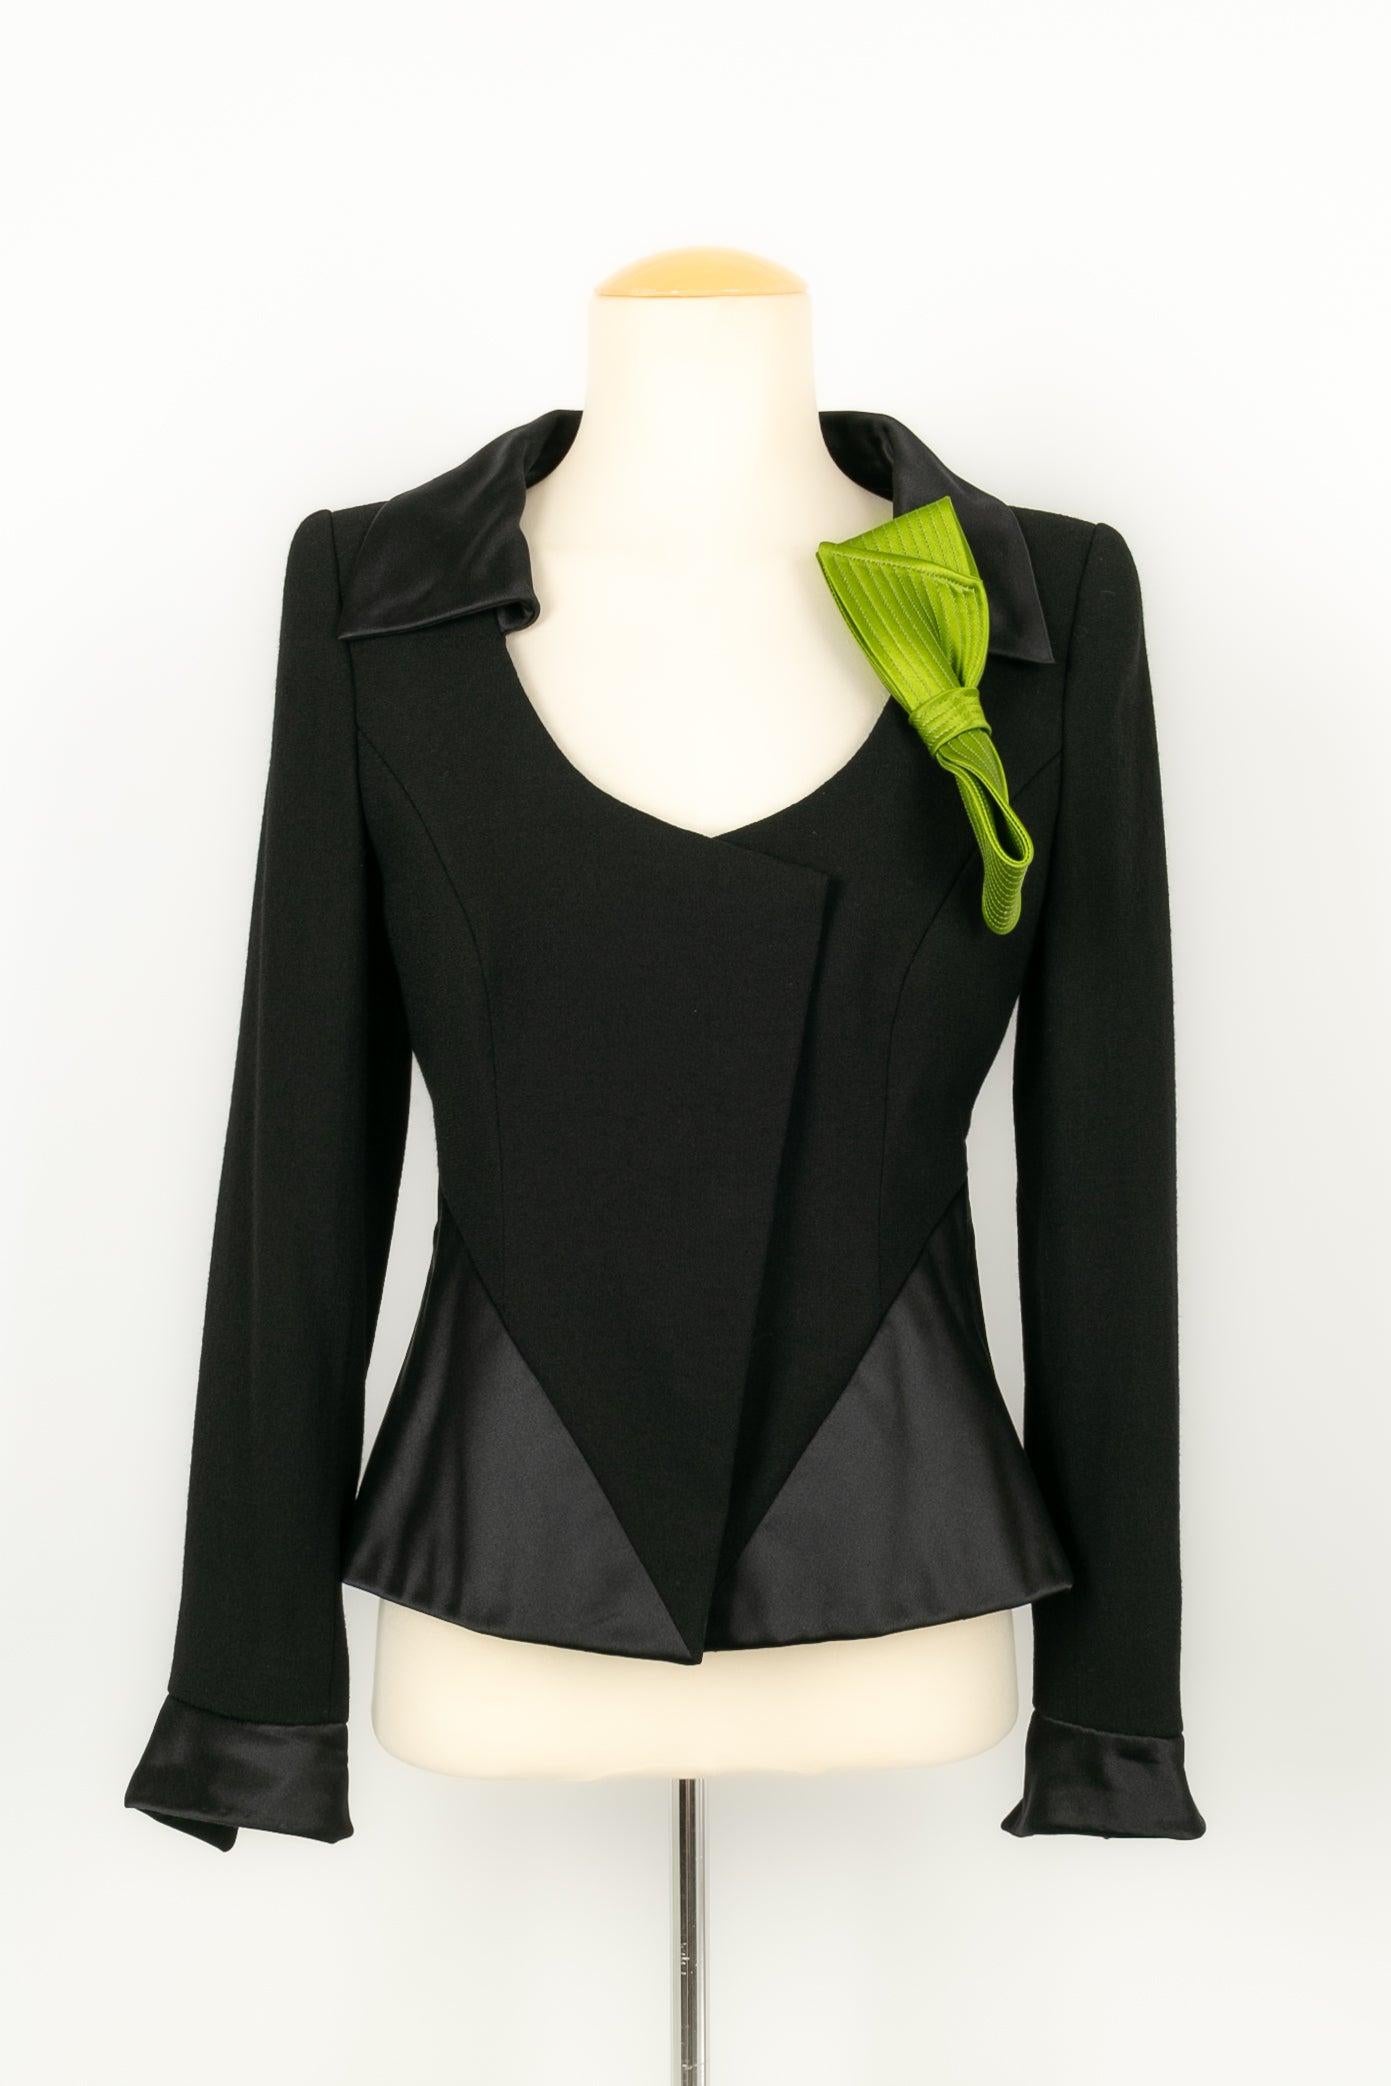 Christian Lacroix - Haute Couture Set bestehend aus einer schwarzen Jacke und einer Brosche in Form einer grünen Seidenschleife. Der Rock ist mit schwarzer Spitze überzogen. Keine Größenangabe, es passt eine 36FR.

Zusätzliche